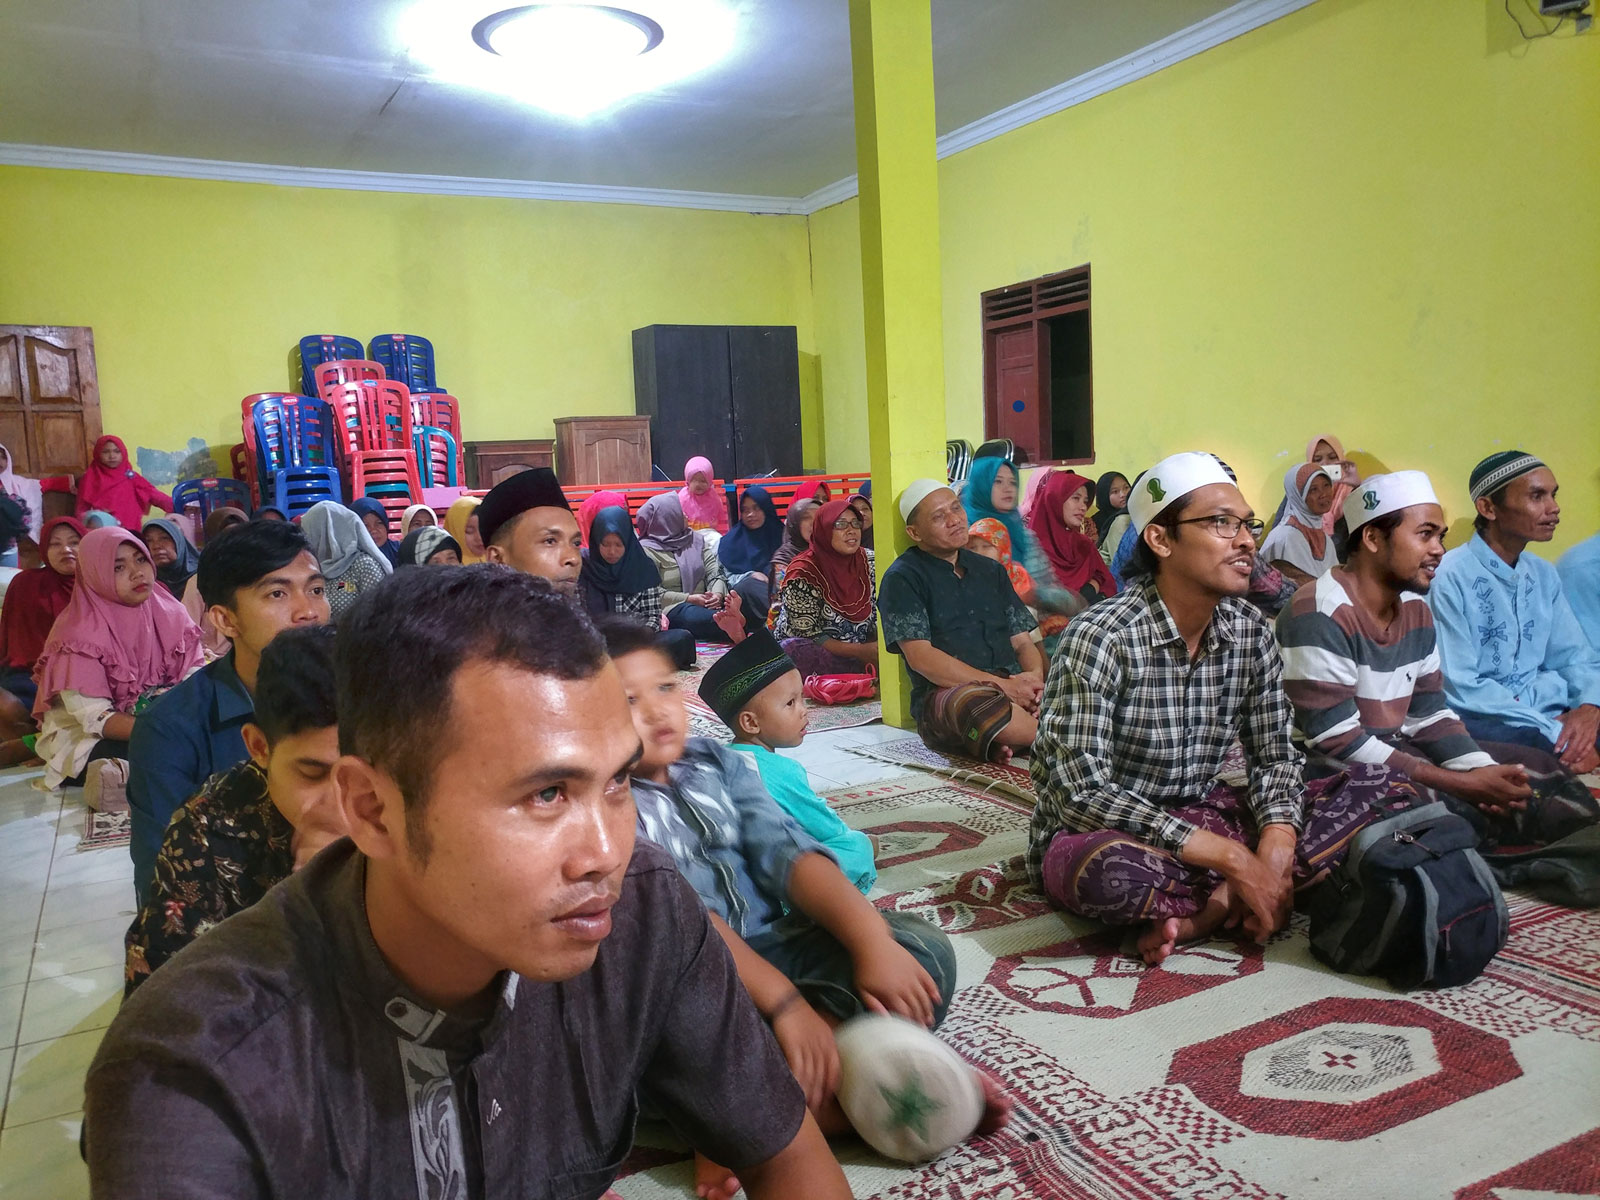 MP3 Pengajian Akbar Bersama Ustadz Ali Assegaf dan Mahasiswa KKN UNS 2019 di Pacitan